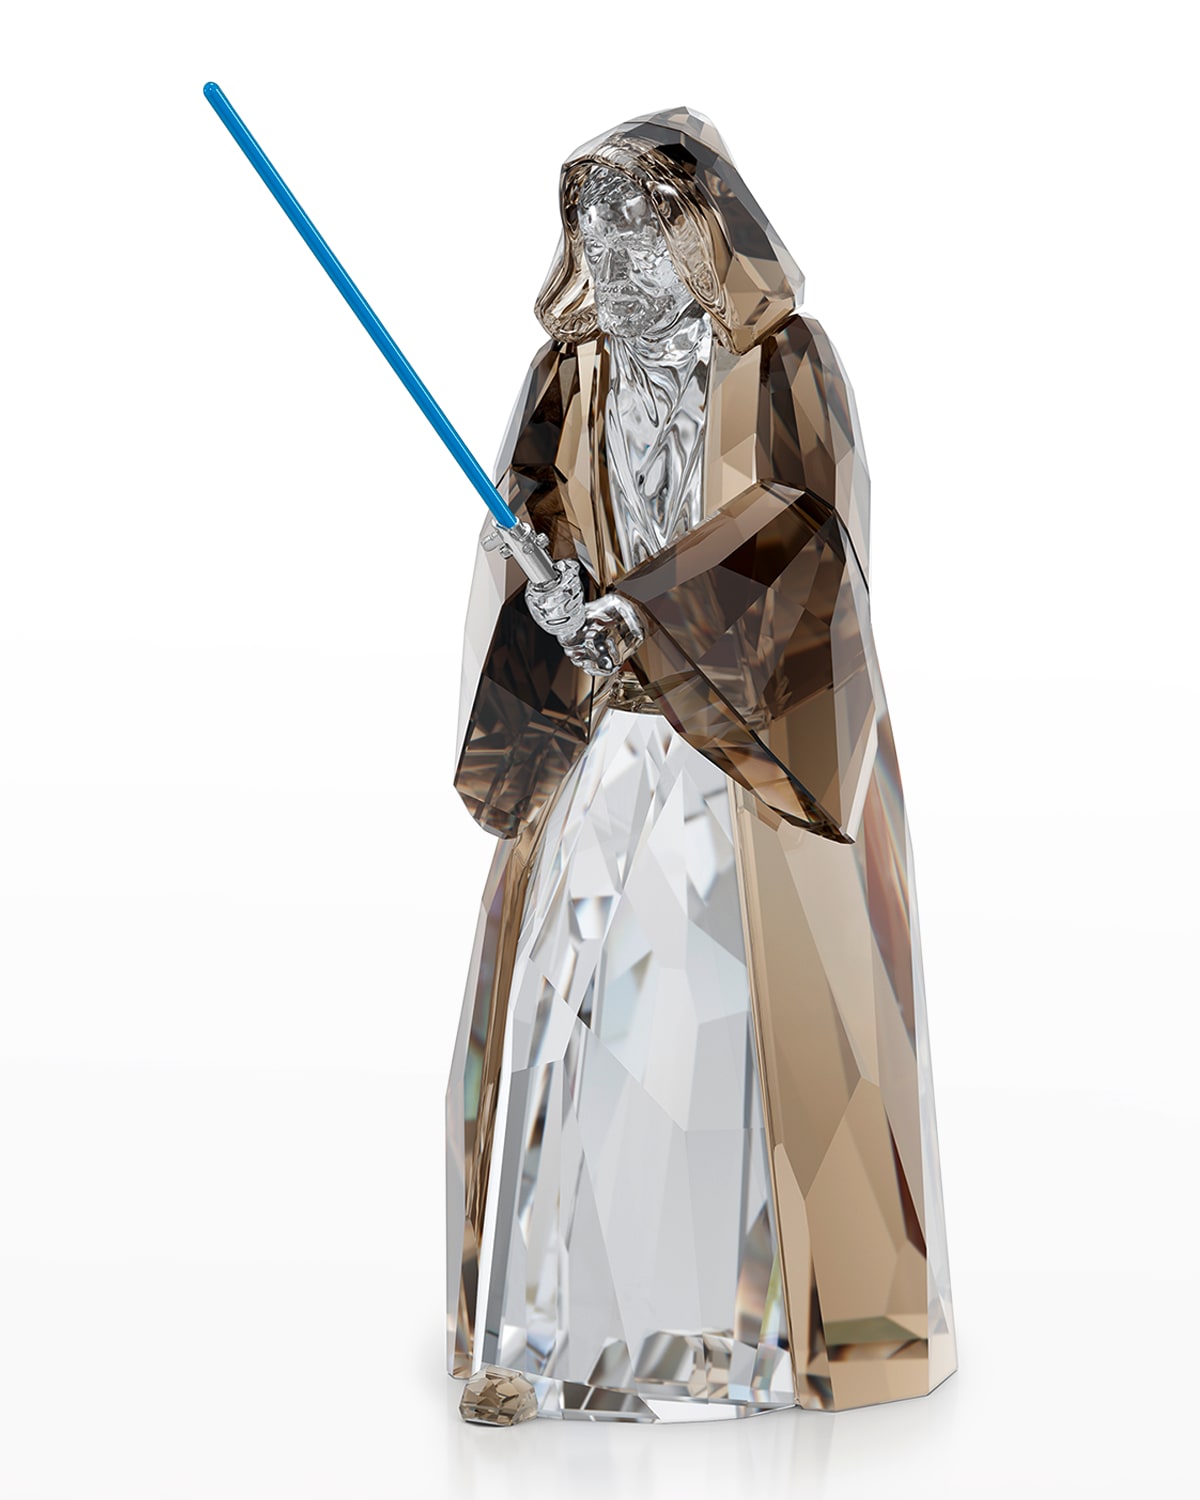 Star Wars Obi-Wan Kenobi Ornament